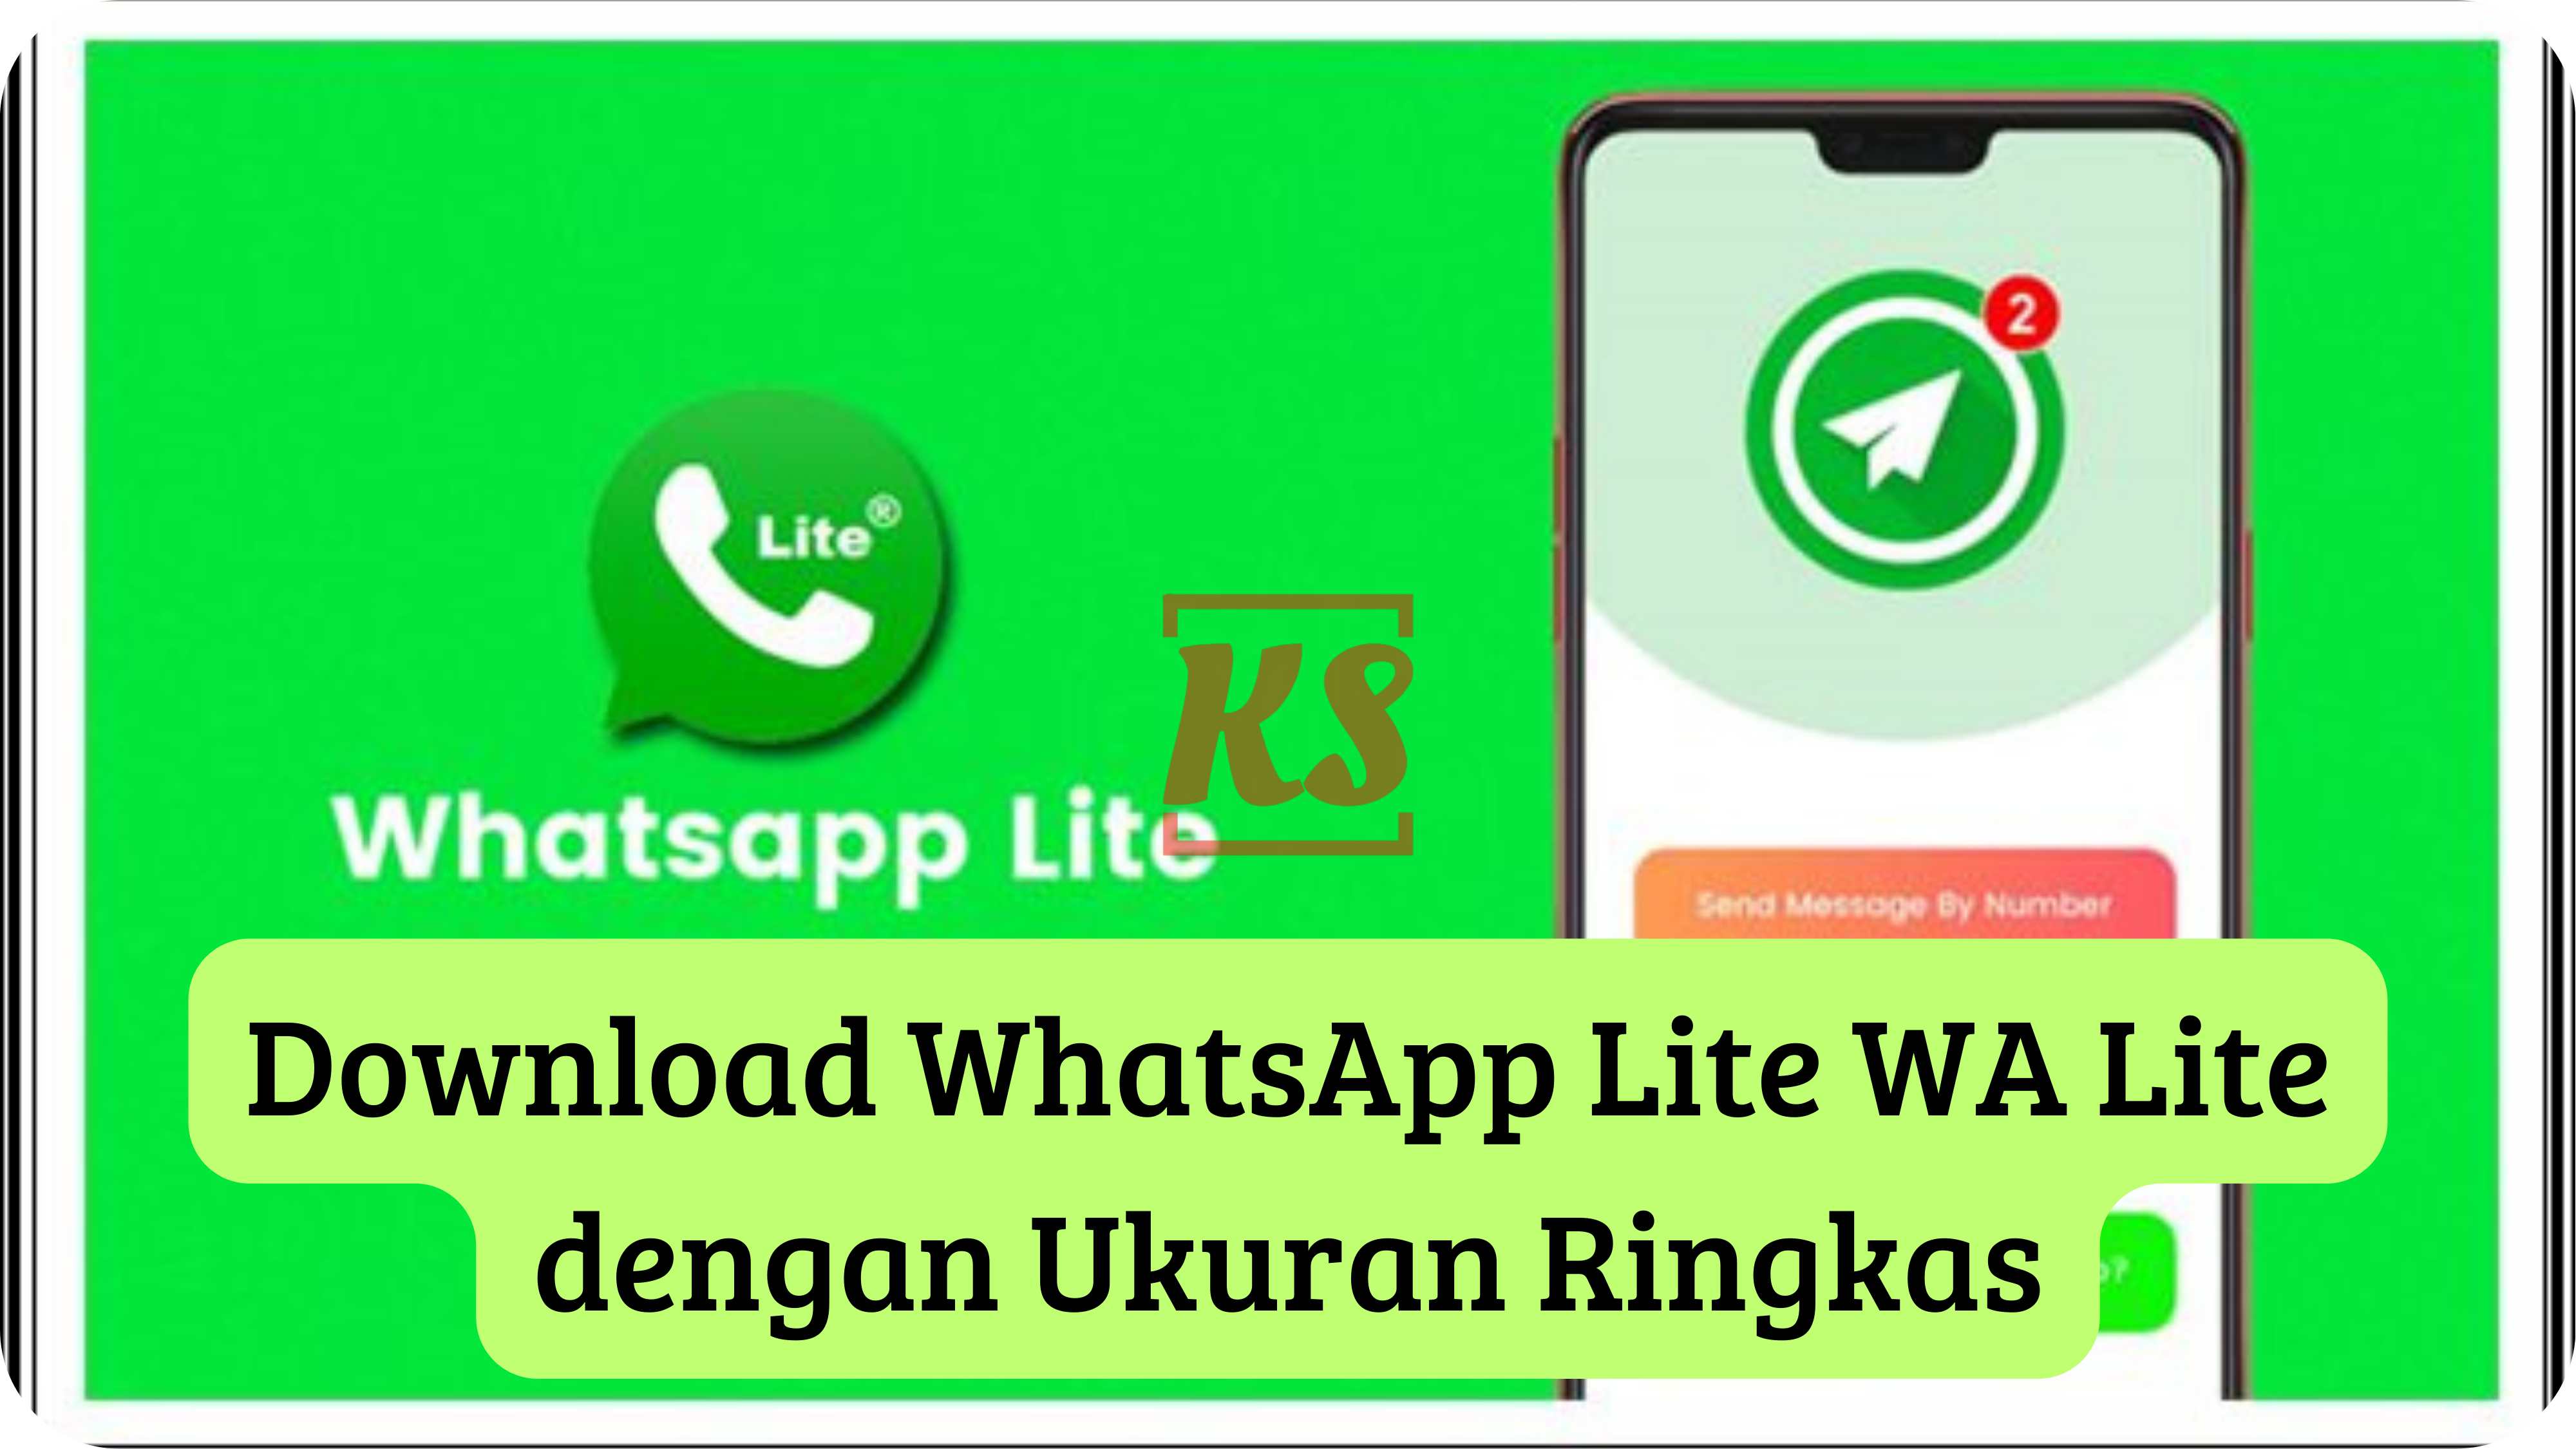 Download WhatsApp Lite WA Lite dengan Ukuran Ringkas